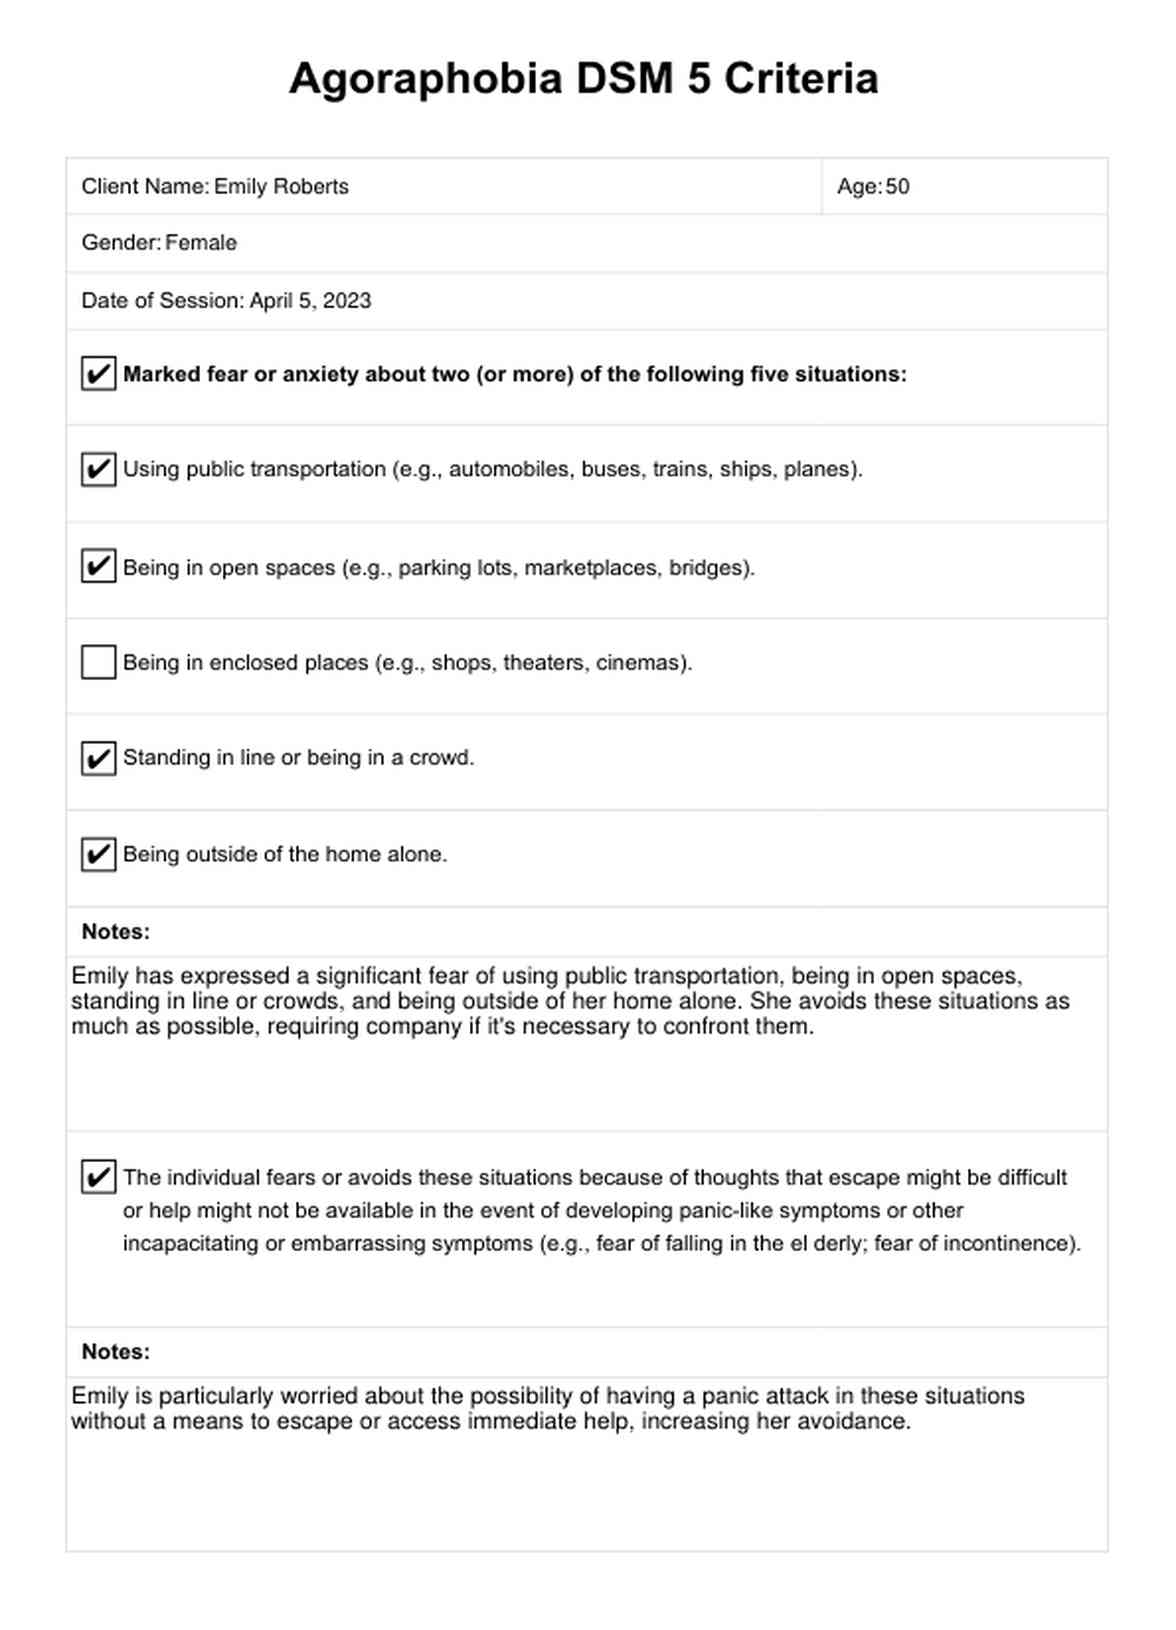 Agoraphobia DSM 5 Criteria PDF Example